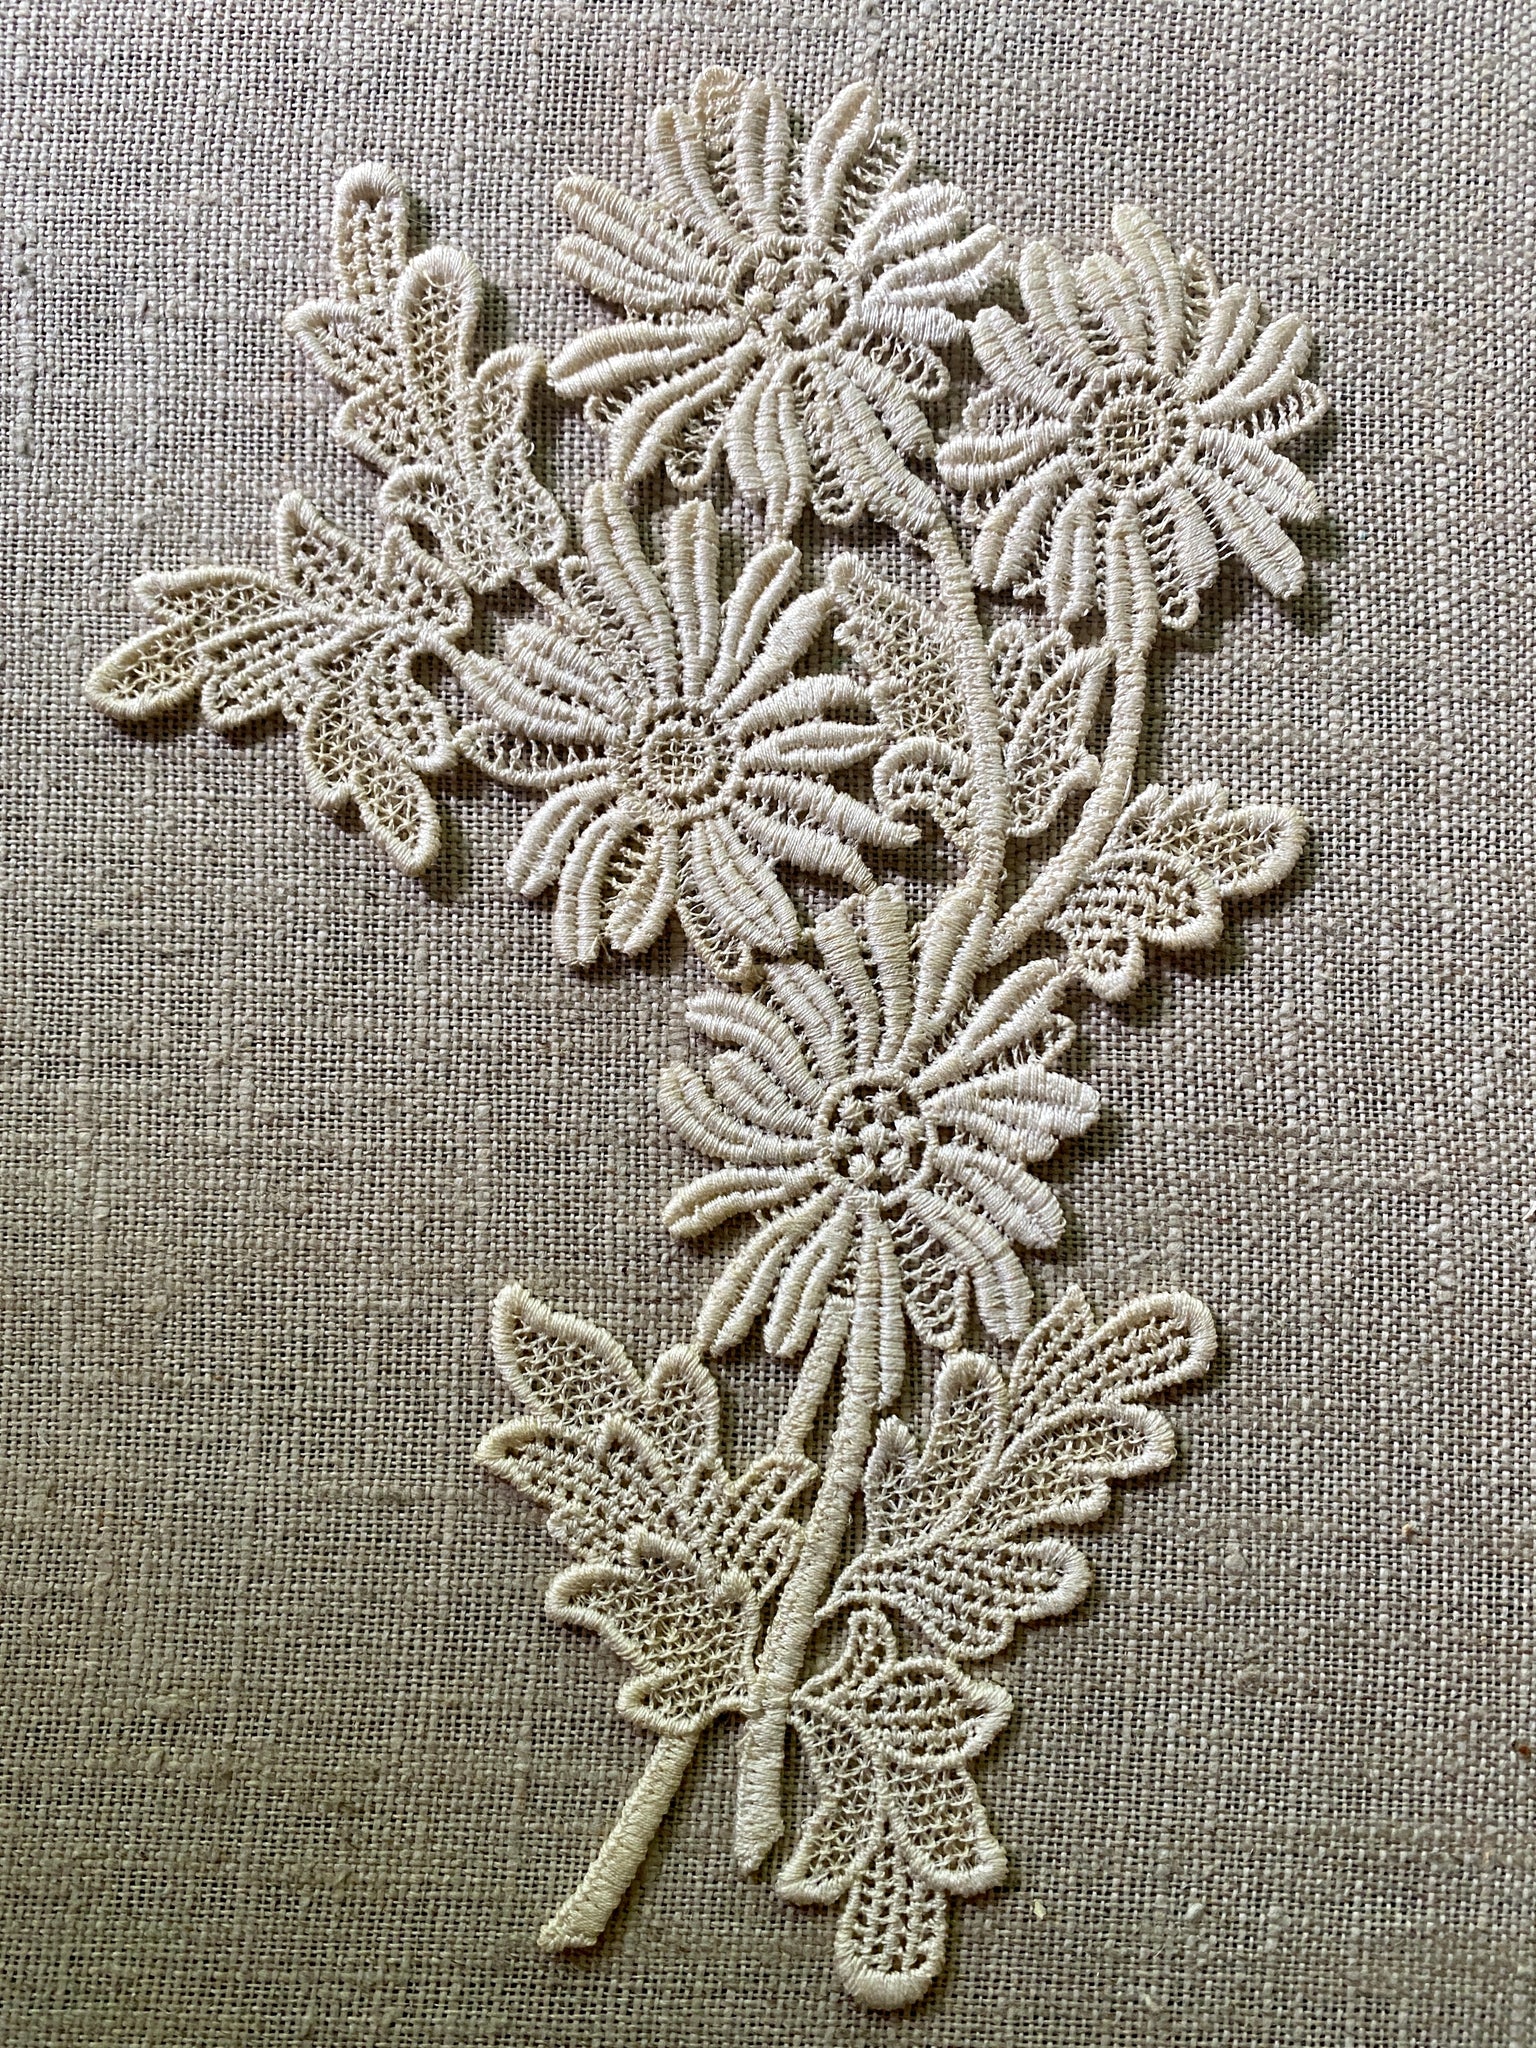 Pair of Schiffli Lace Floral Applique – Vintage Passementerie